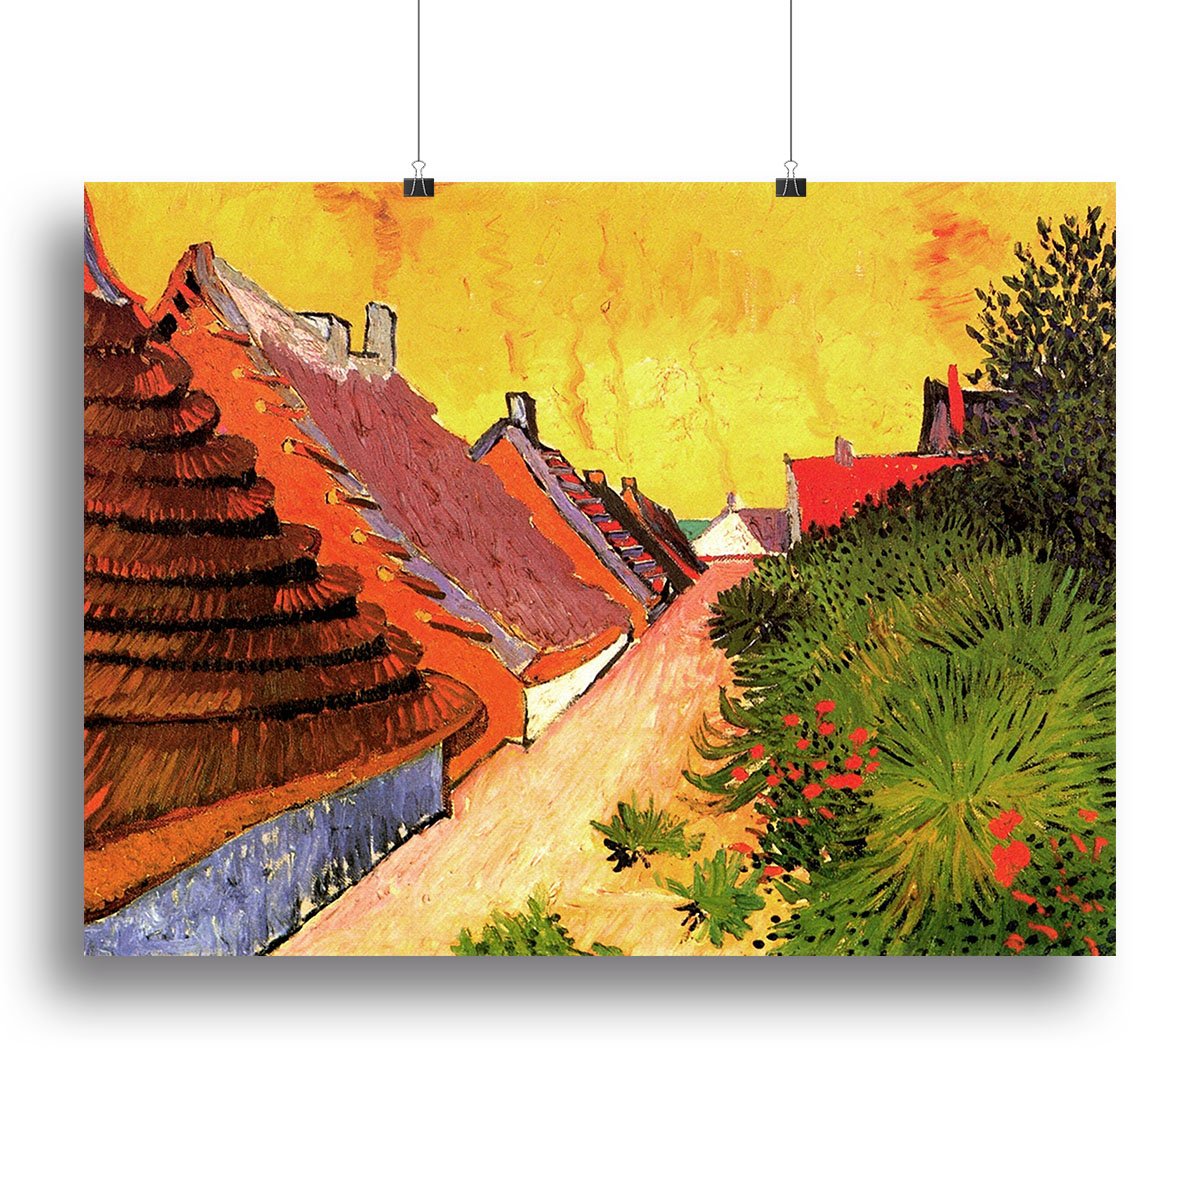 Street in Saintes-Maries by Van Gogh Canvas Print or Poster